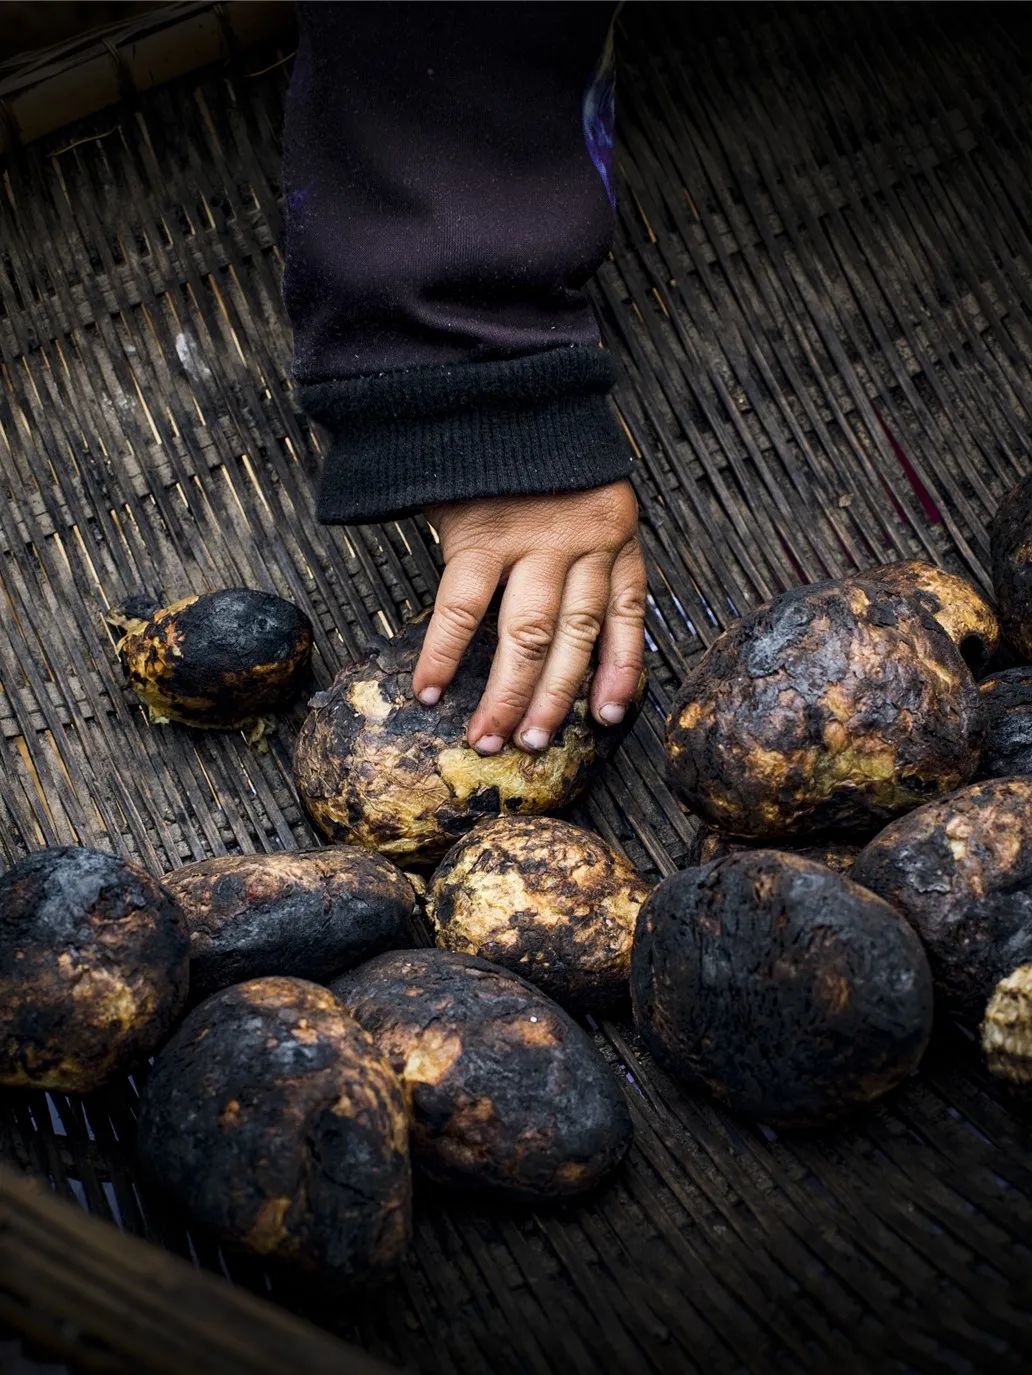 ▲ 贵州威宁农家的烤土豆。摄影/李光荣